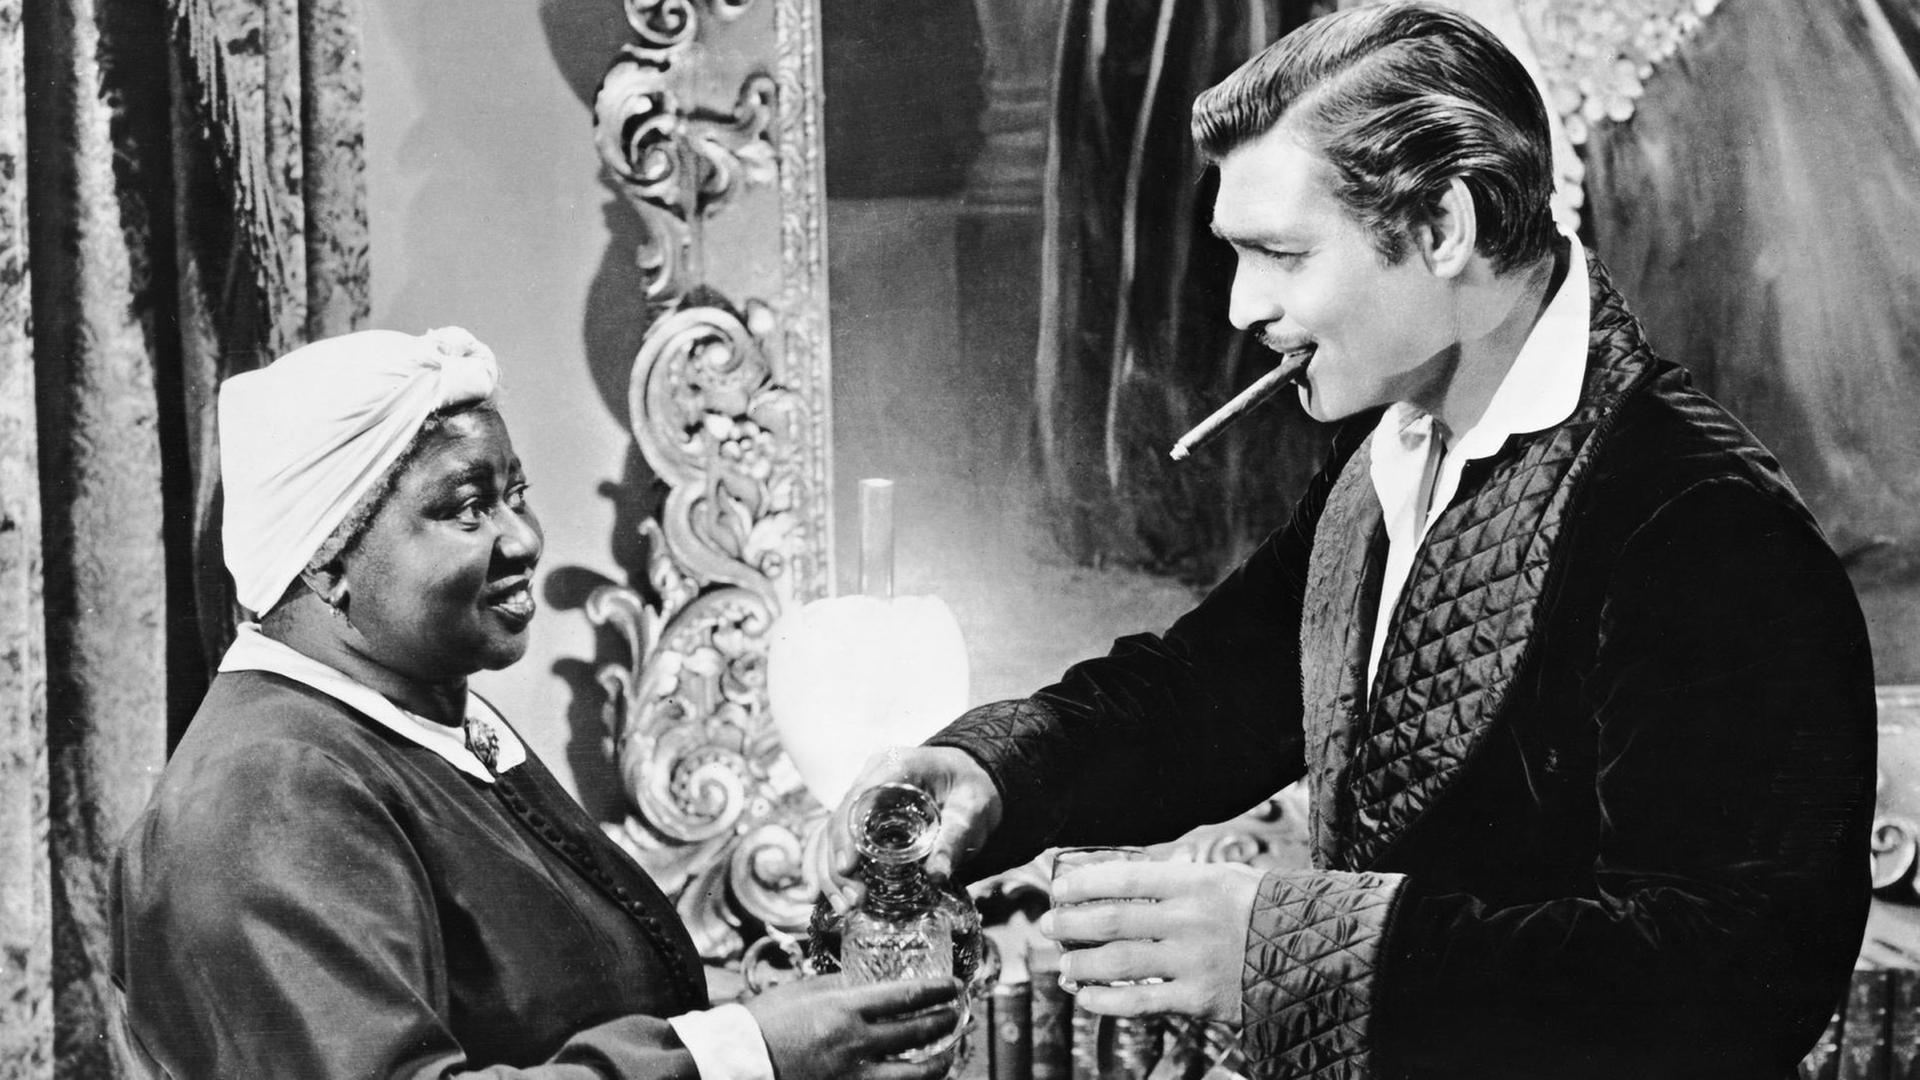 Die schwarze Schauspielerin Hattie McDaniel und der weiße Schauspieler Clark Gable in dem Film "Vom Winde verweht"